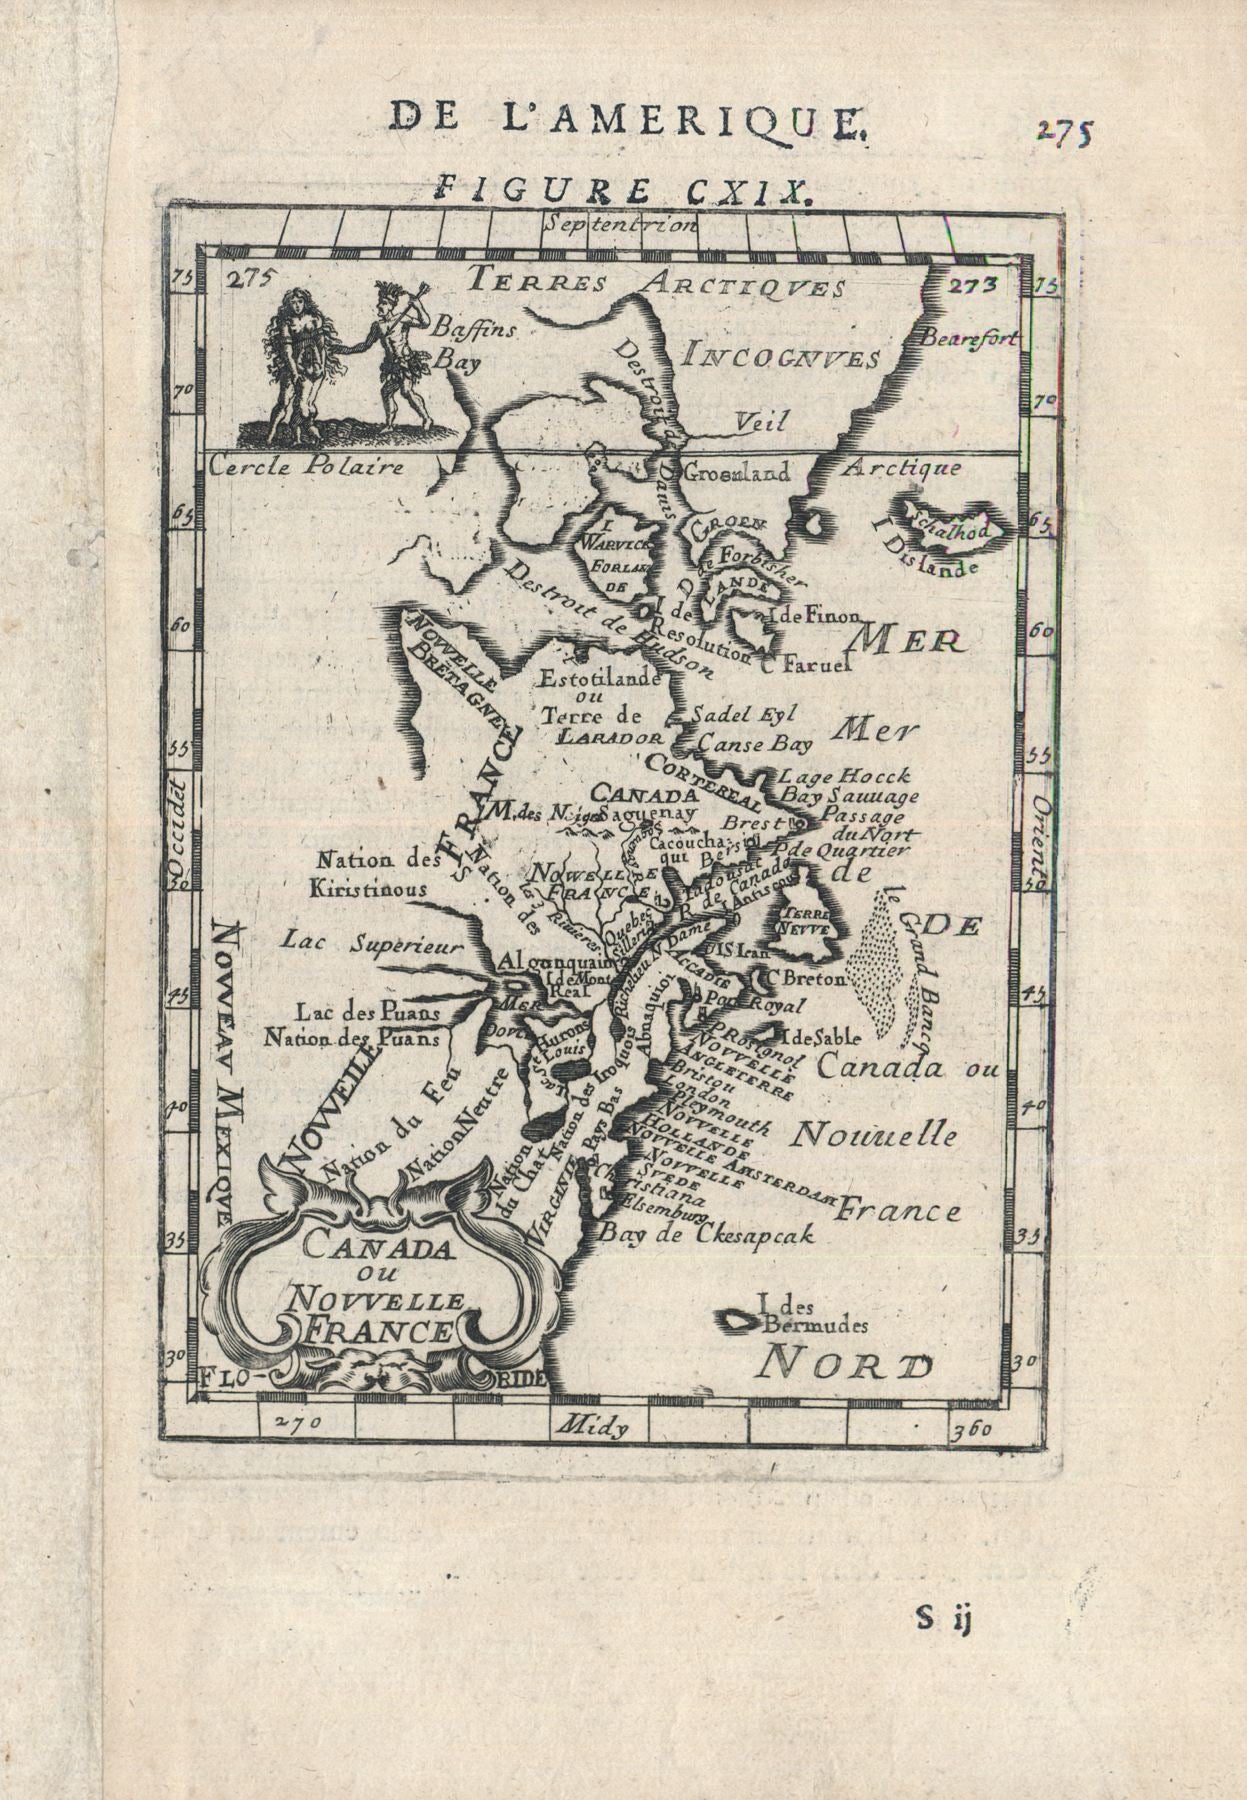 R2592  Mallet, Alain: Canada ou Nouvelle France. 1683